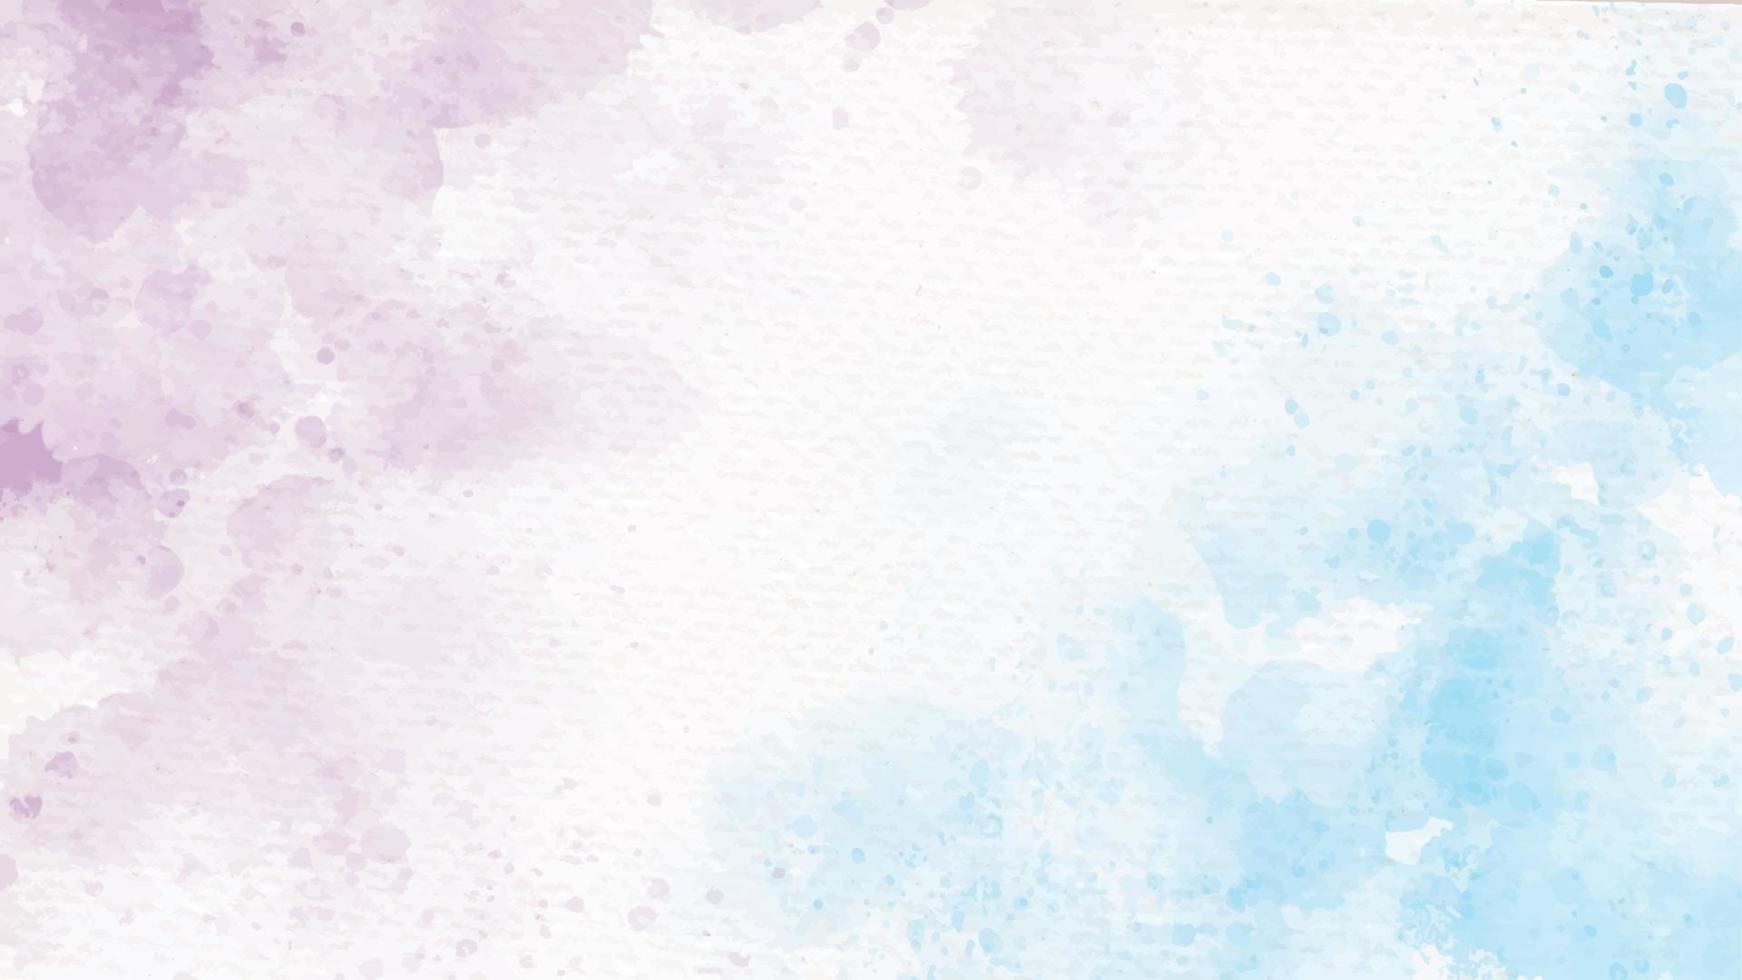 Arco iris azul y violeta unicornio pastel acuarela femenina sobre papel fondo abstracto vector